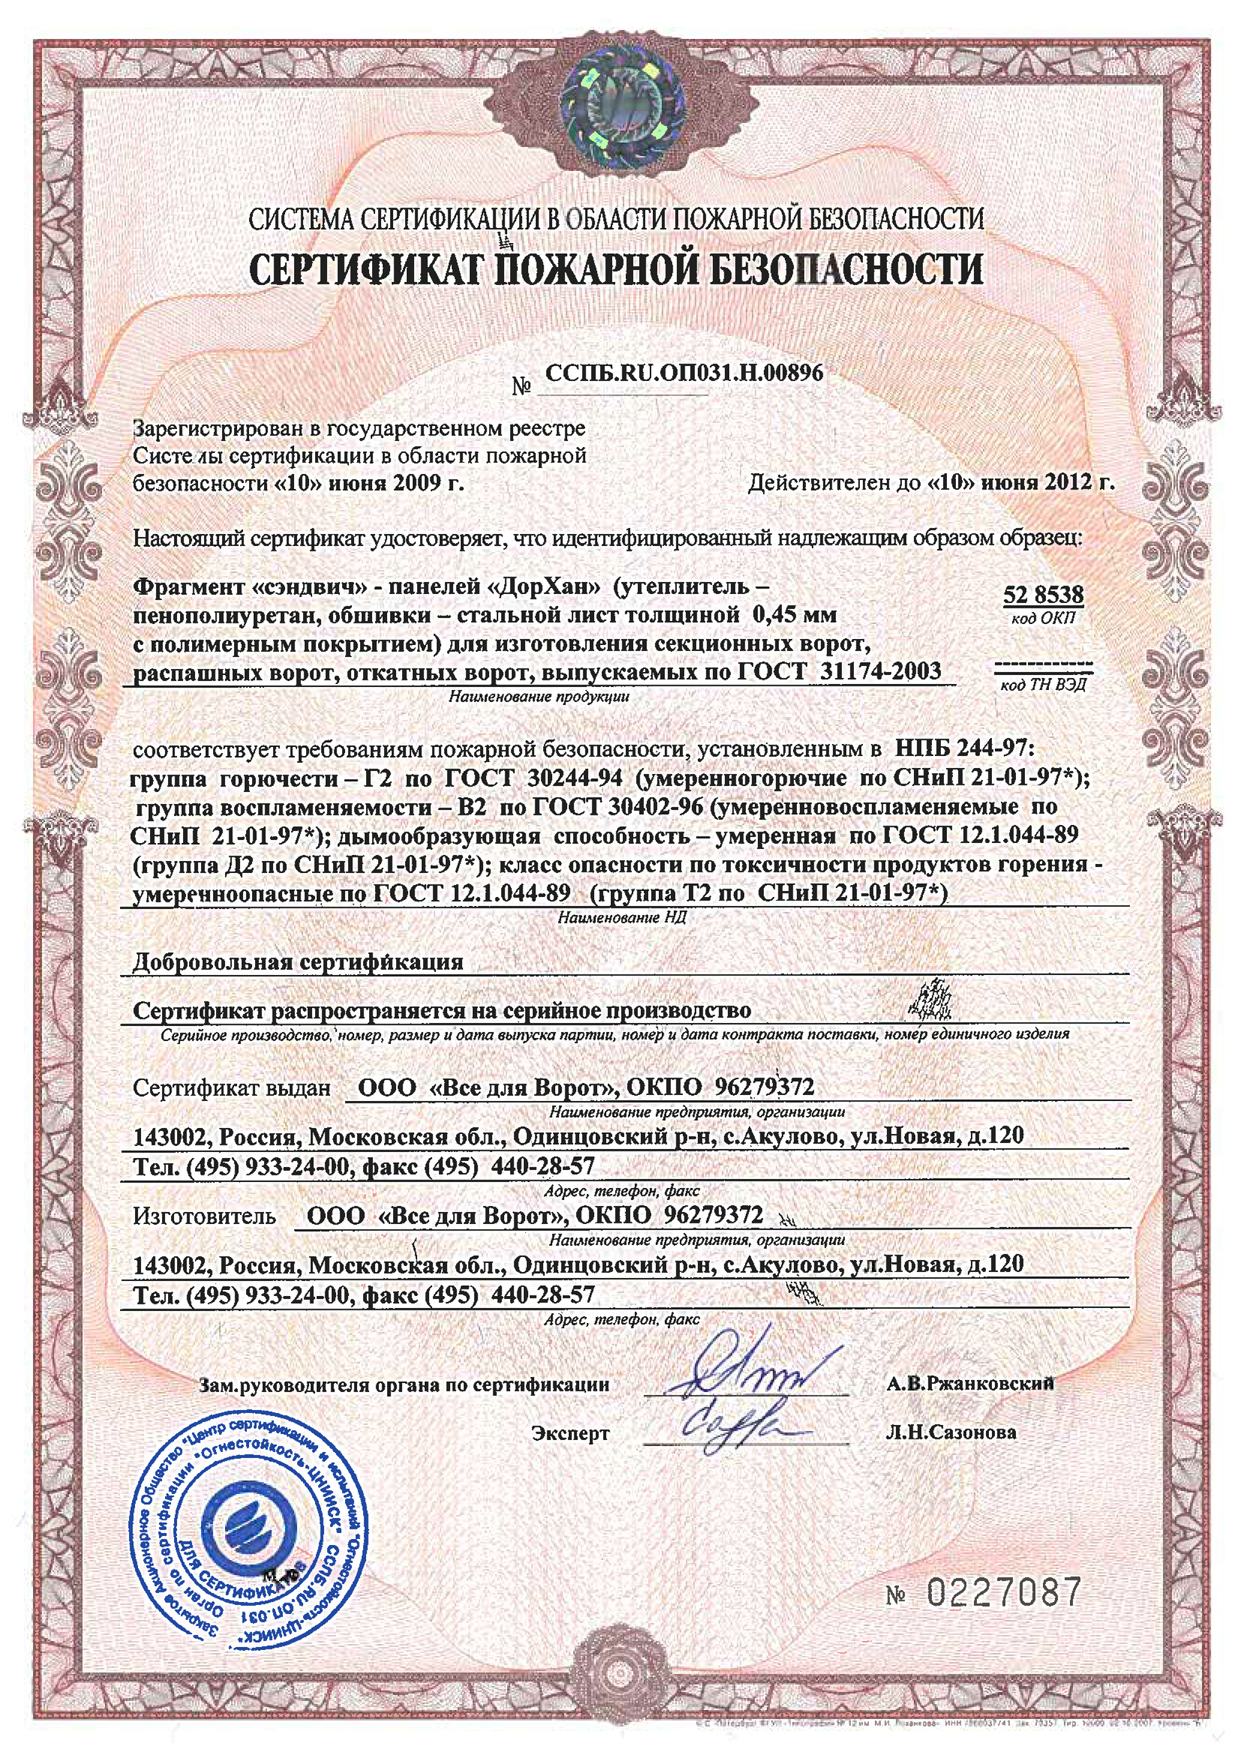 Сертификат пожарной безопасности на панели ПВХ